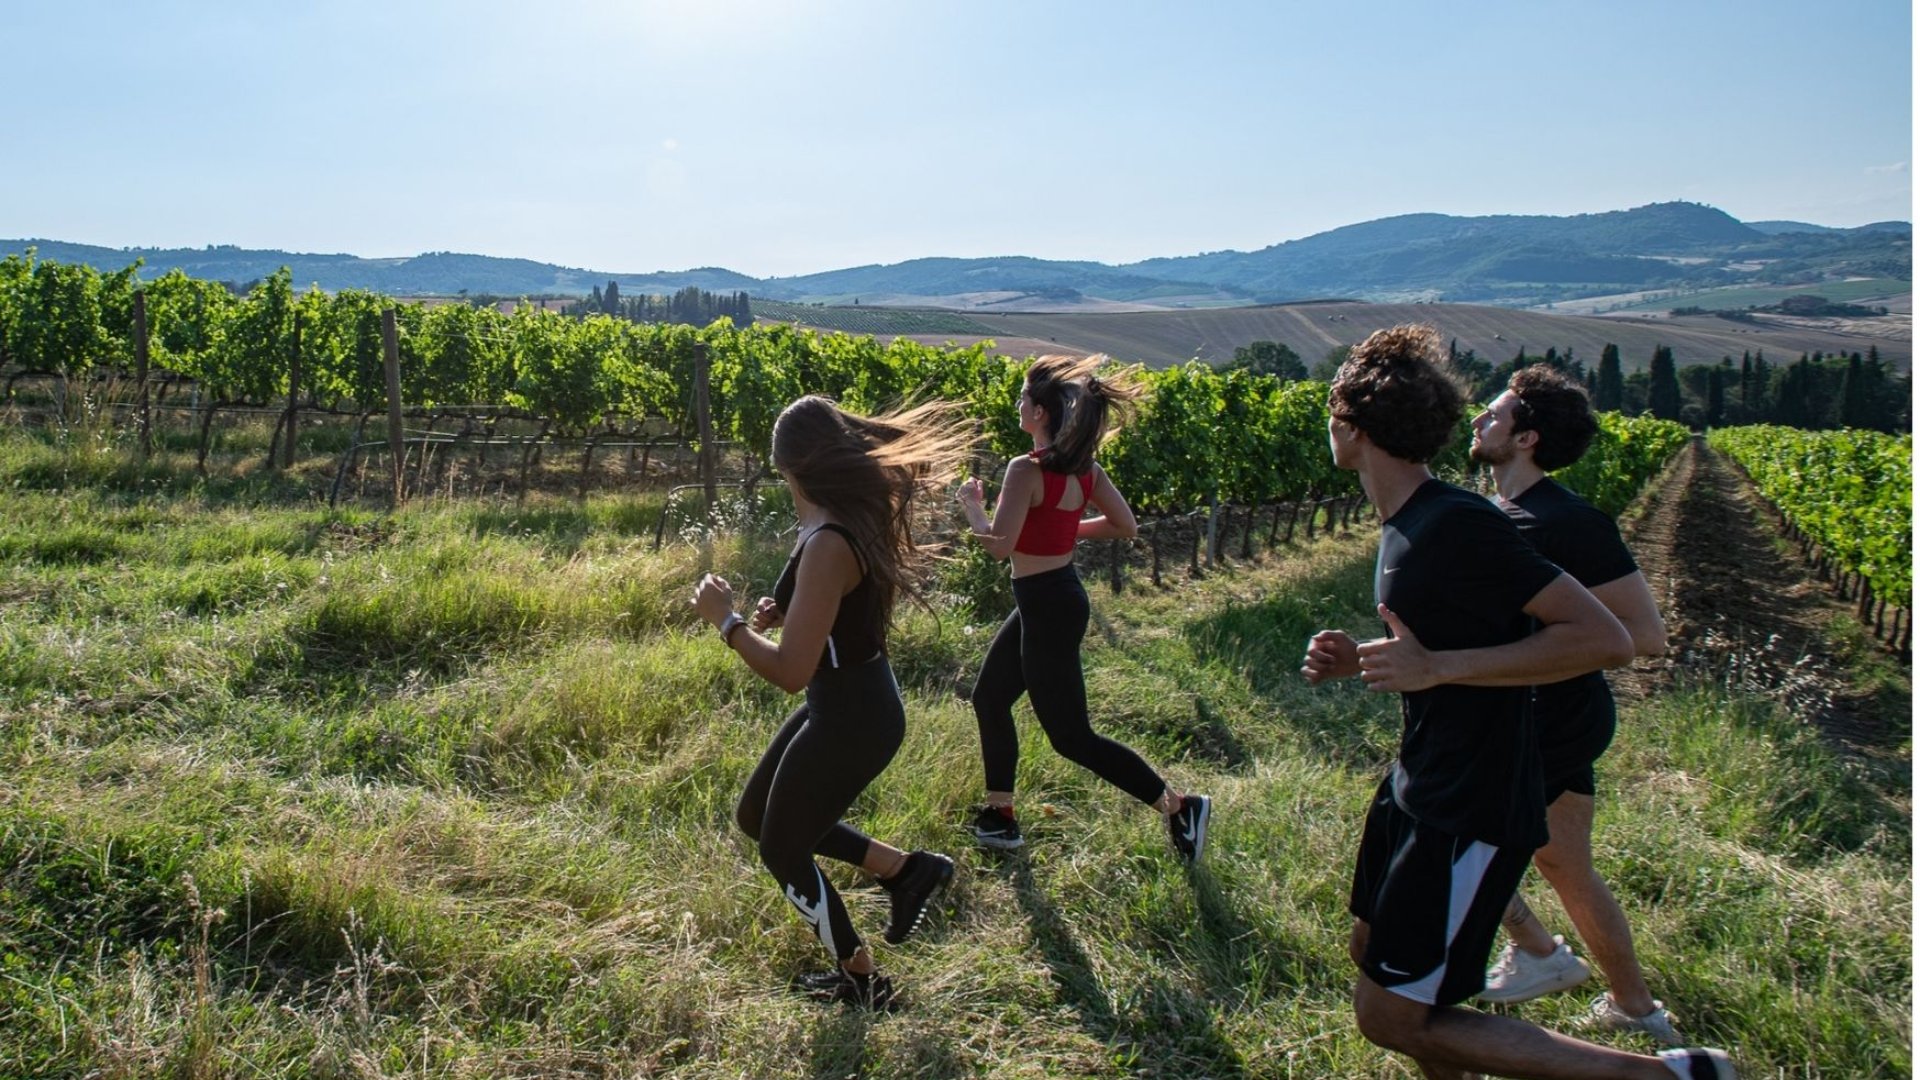 Corsa e allenamento tra i vigneti di Vino Nobile di Montepulciano